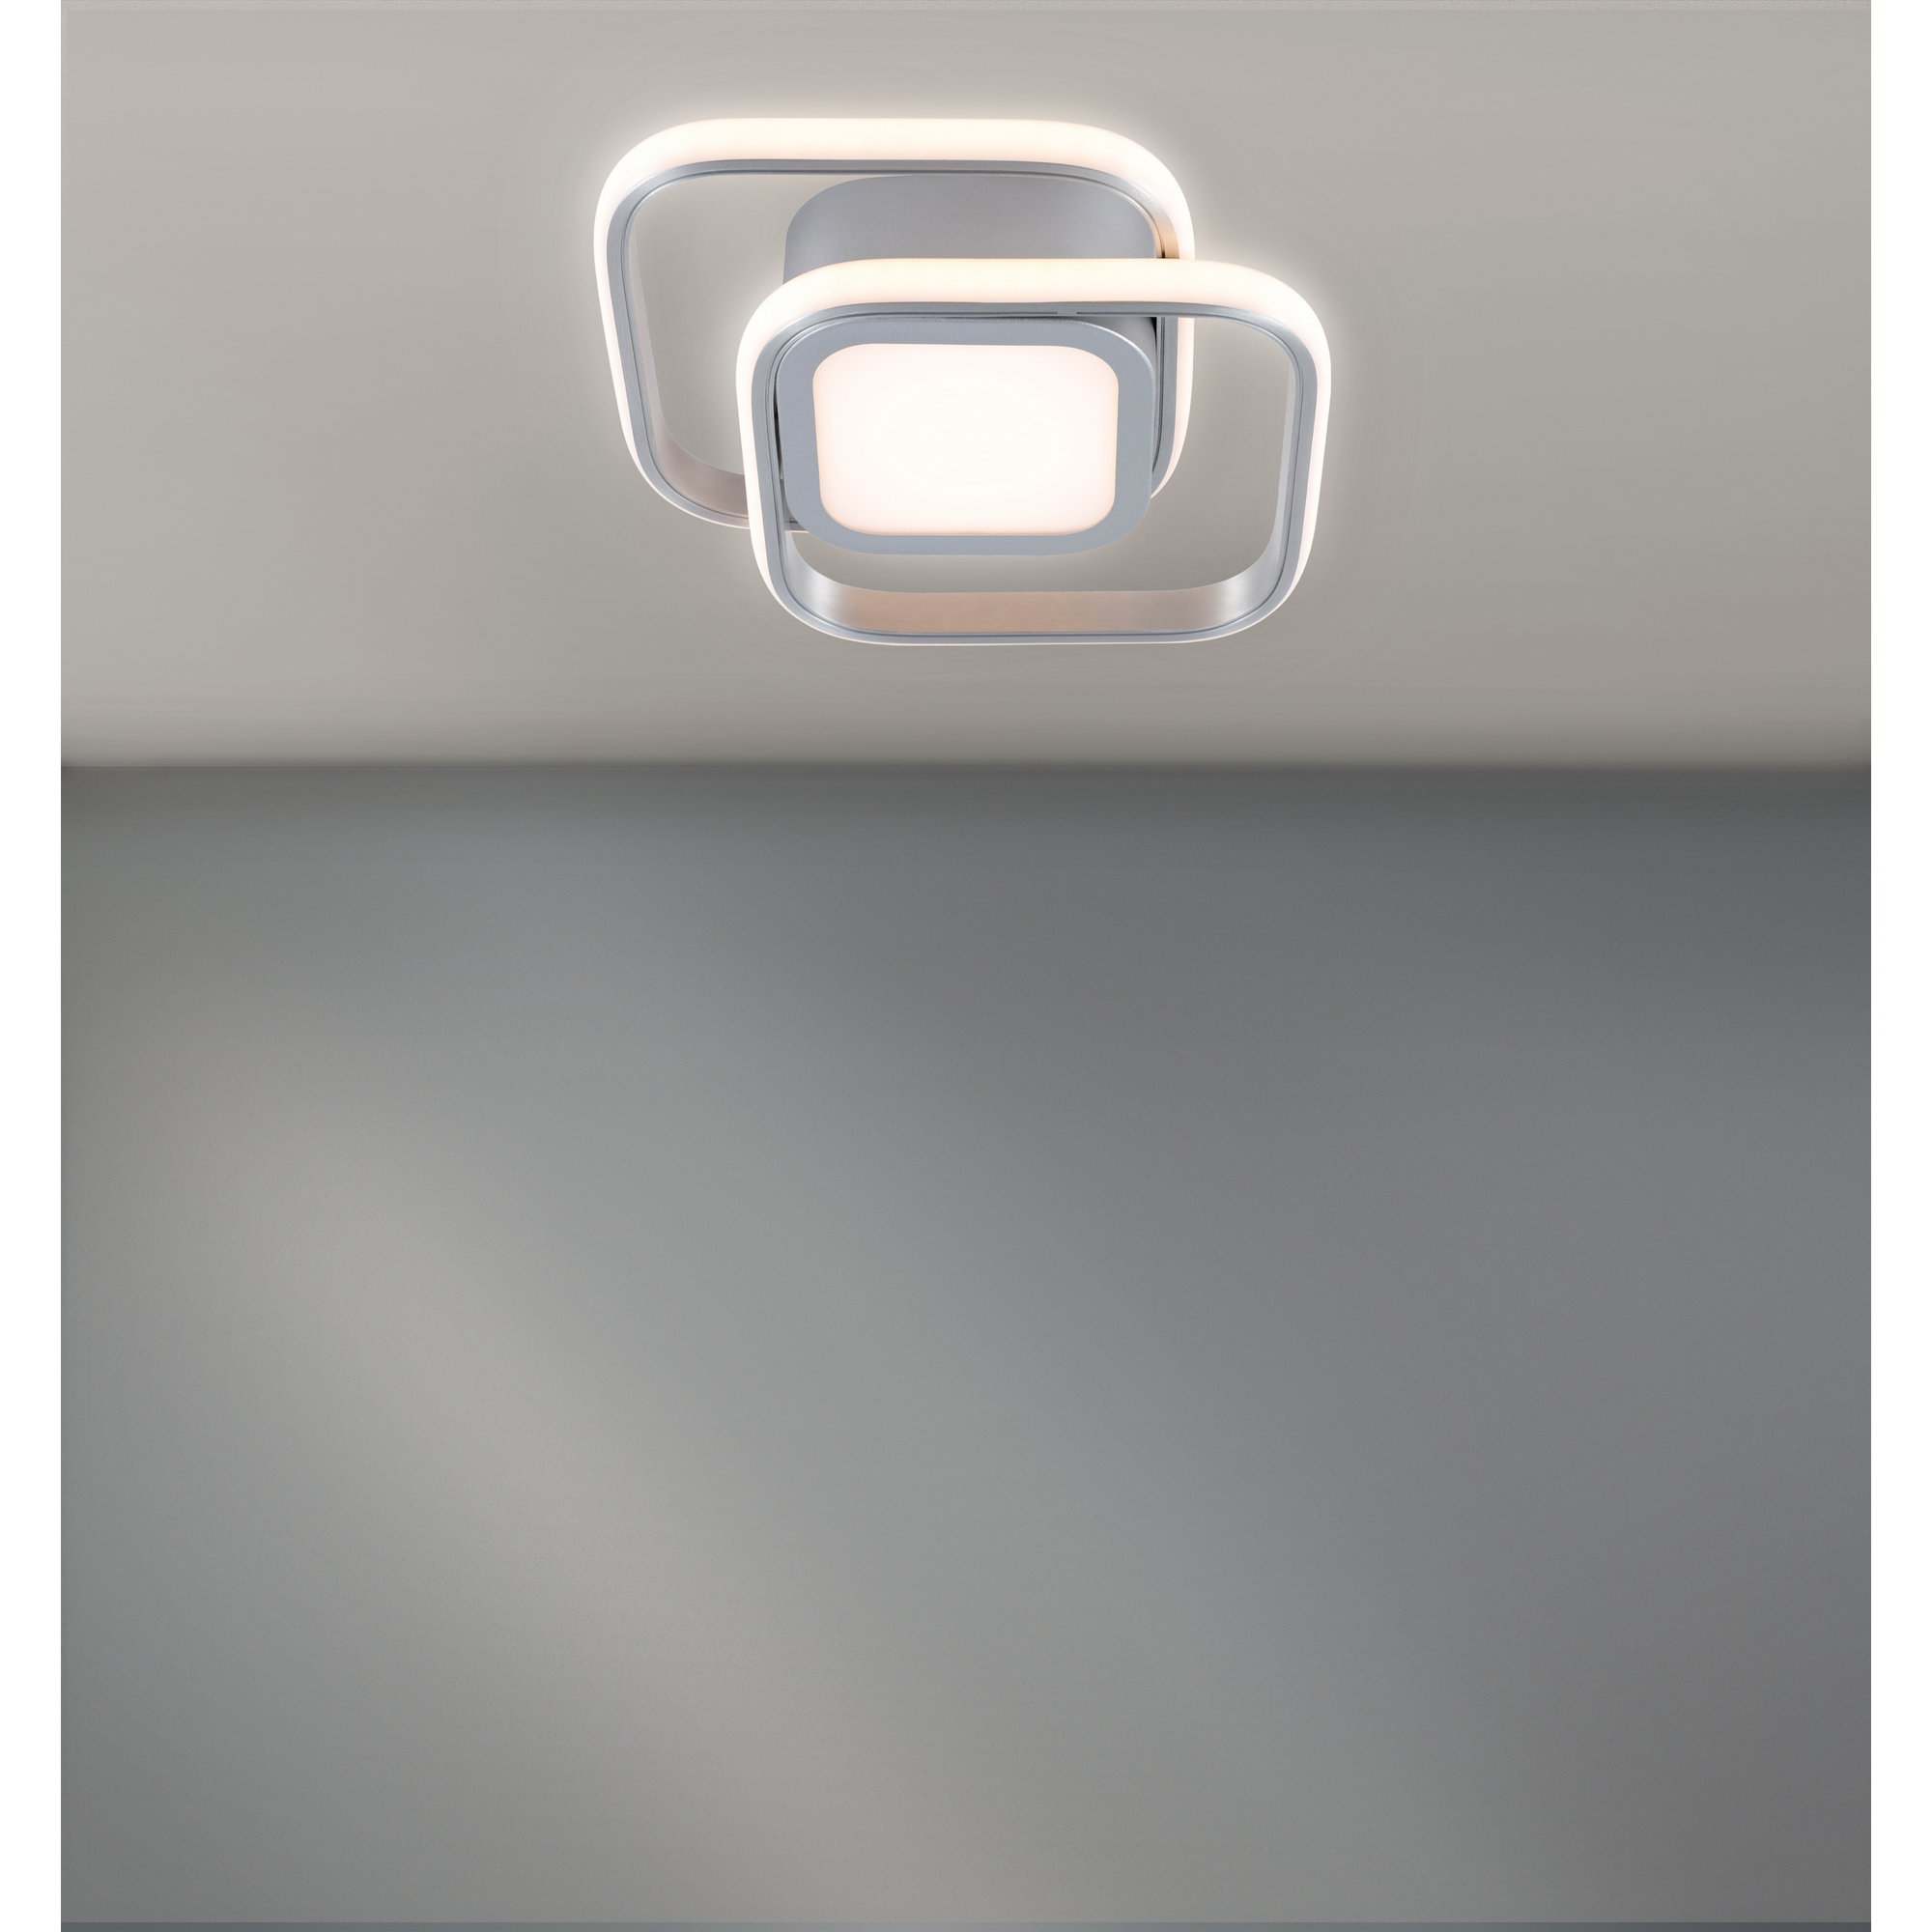 LED-Deckenleuchte 'Twin' alufarben gebürstet 22,5 x 22,5 x 6 cm + product picture